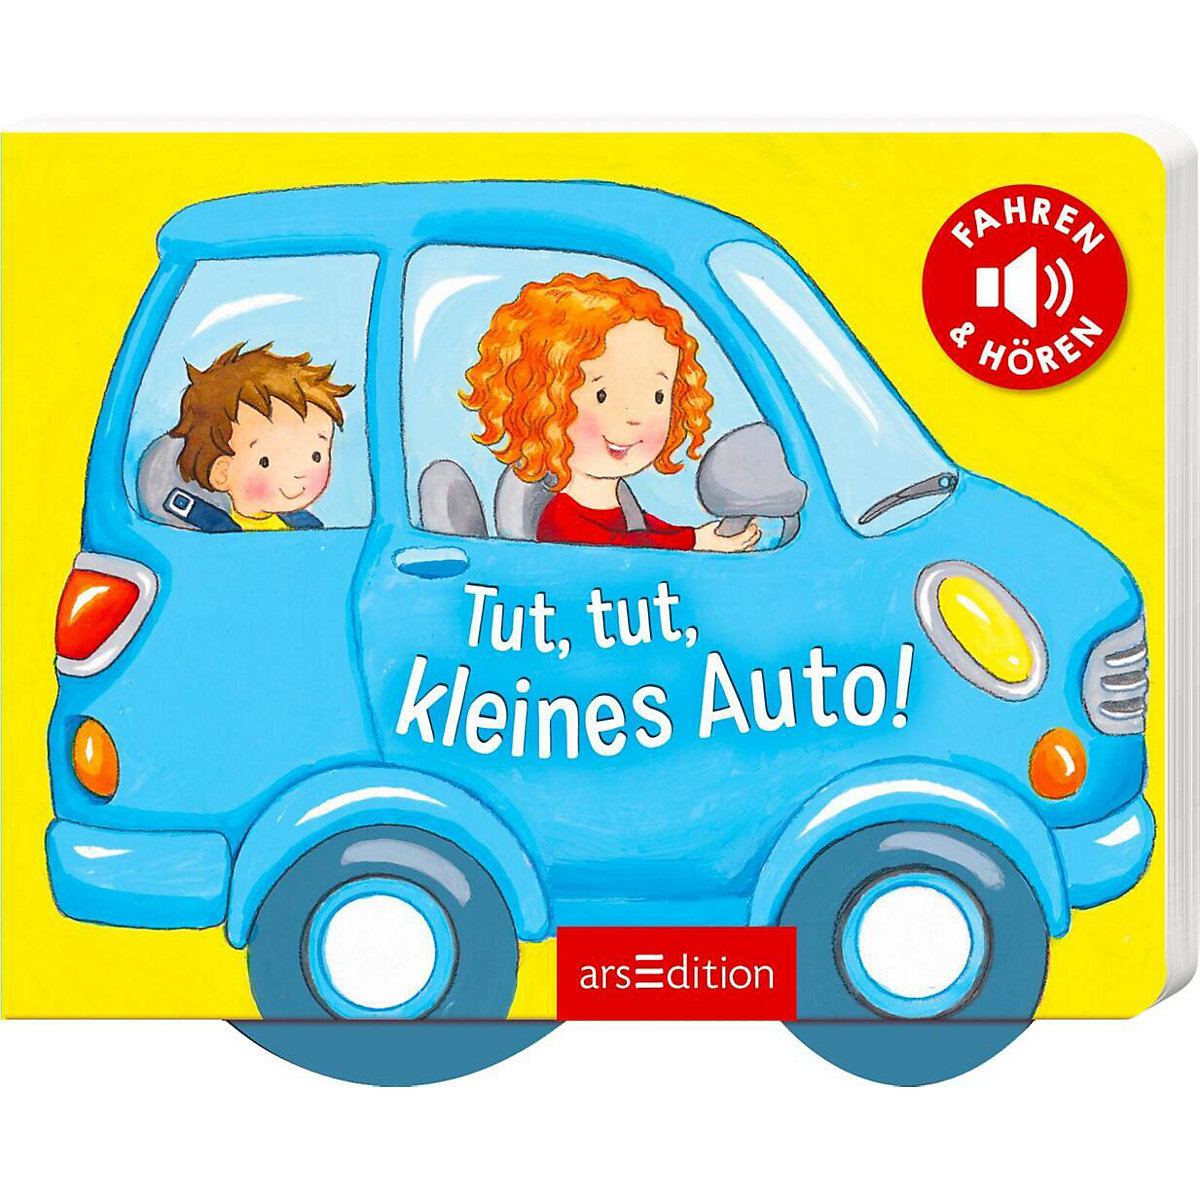 arsEdition Verlag Tut tut kleines Auto!